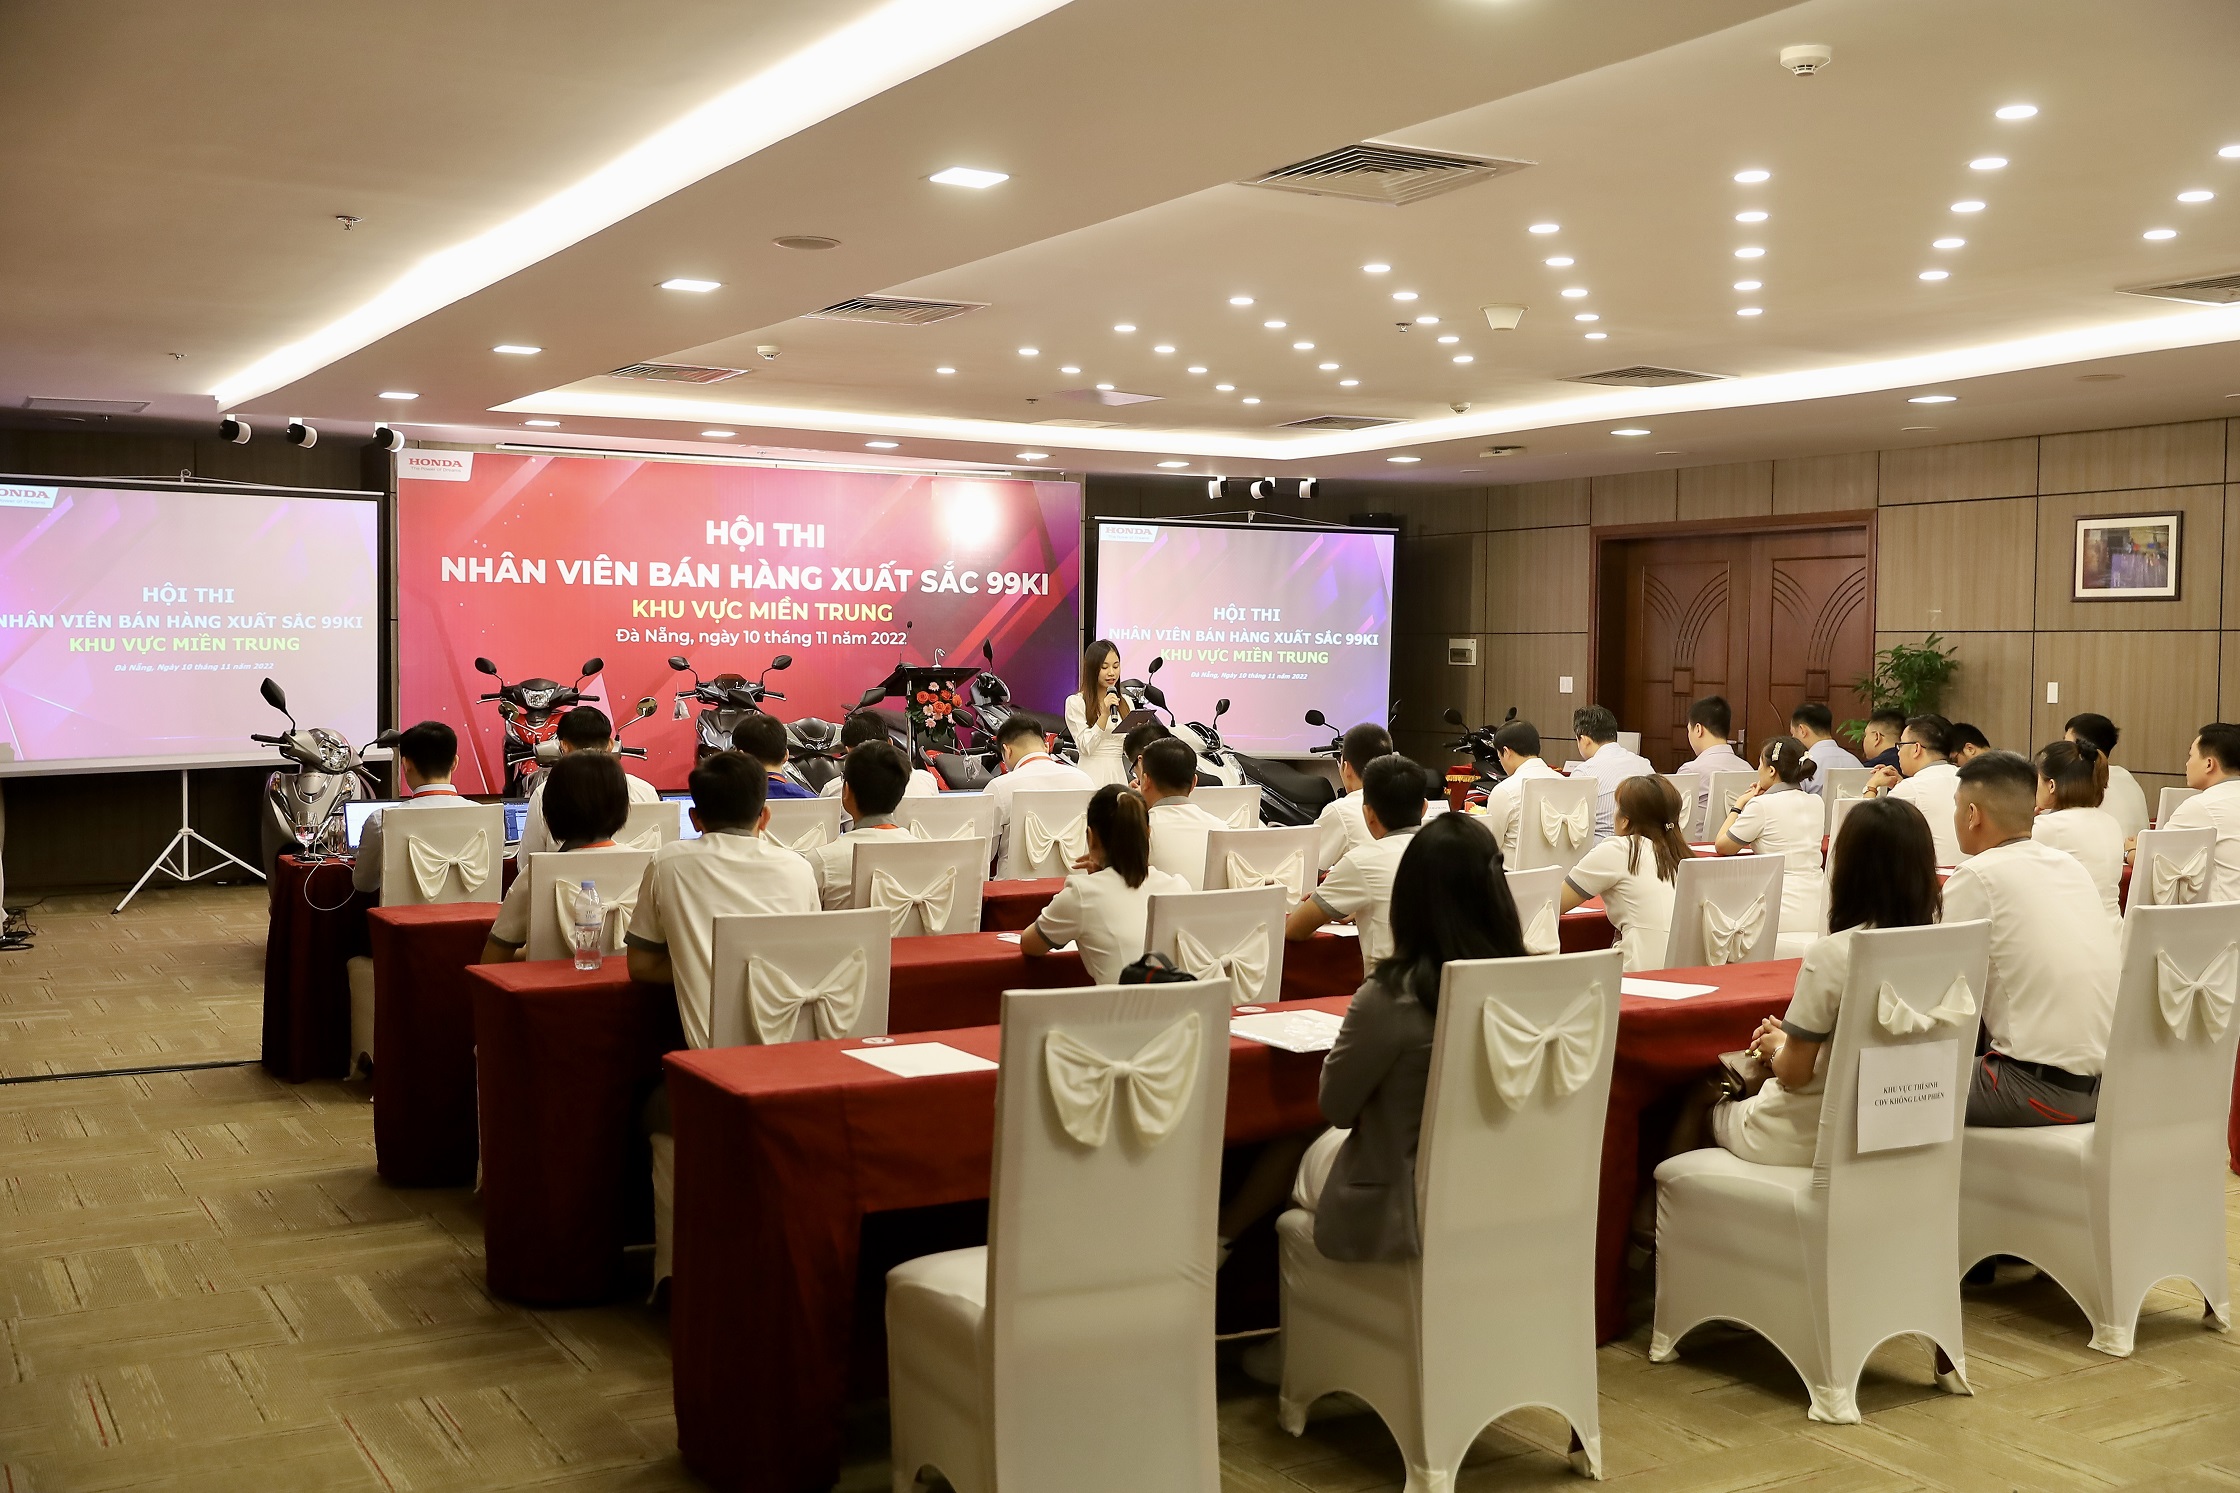 Sôi động vòng thi khu vực hội thi “Nhân viên Bán hàng xuất sắc 2022” của Honda Việt Nam img-7251.jpg